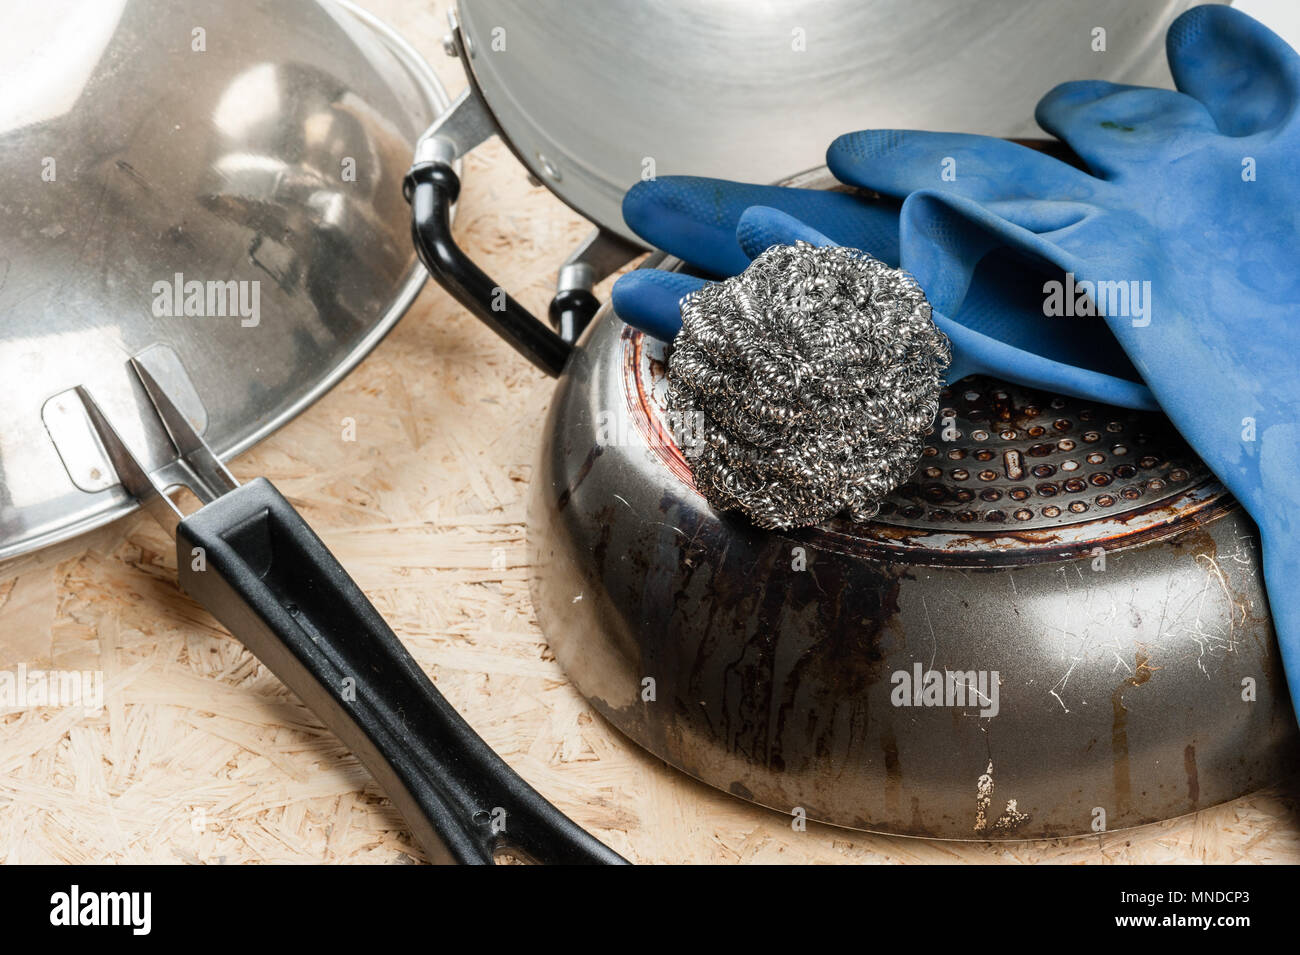 Curseur de l'acier inoxydable, pour tampon à récurer la vaisselle Banque D'Images